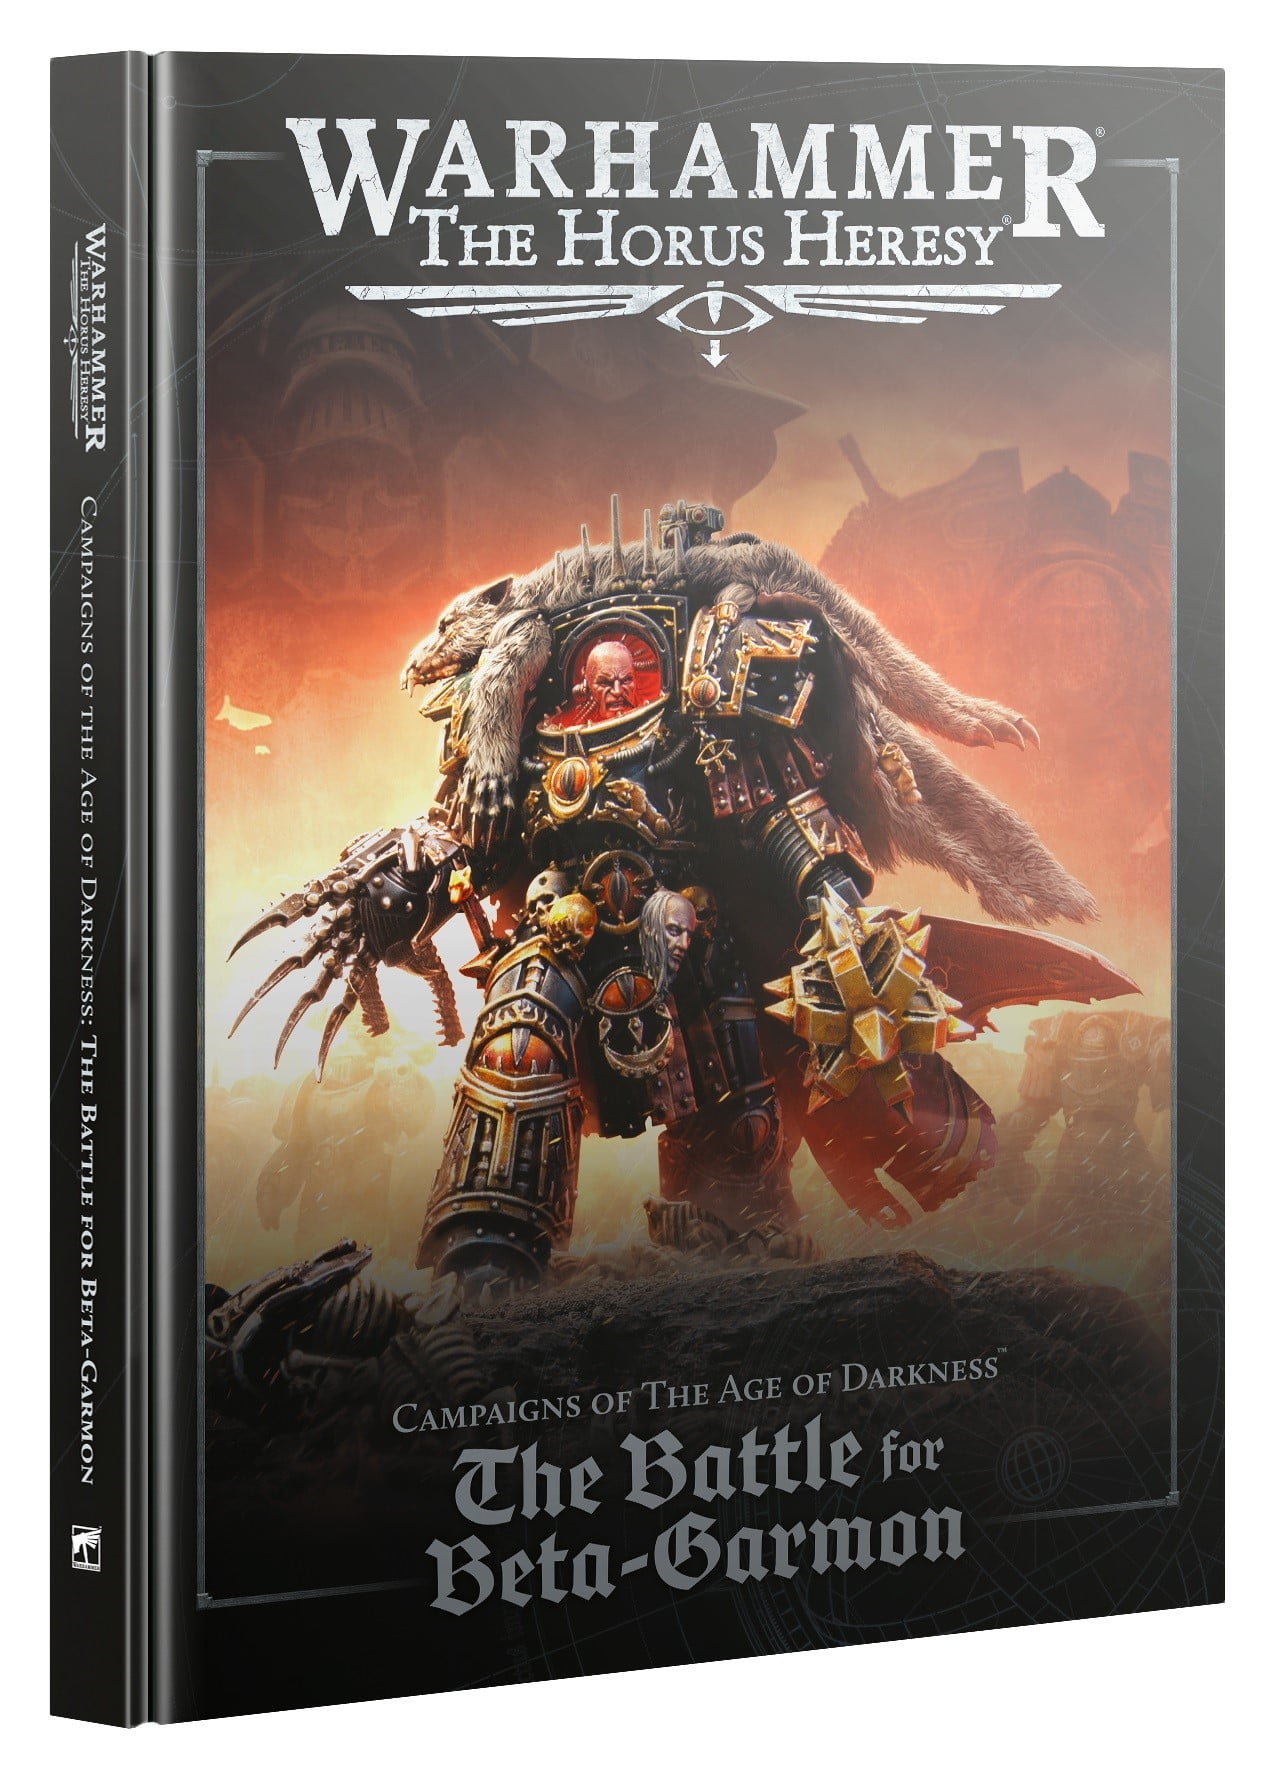 The Battle For Beta-Garmon book